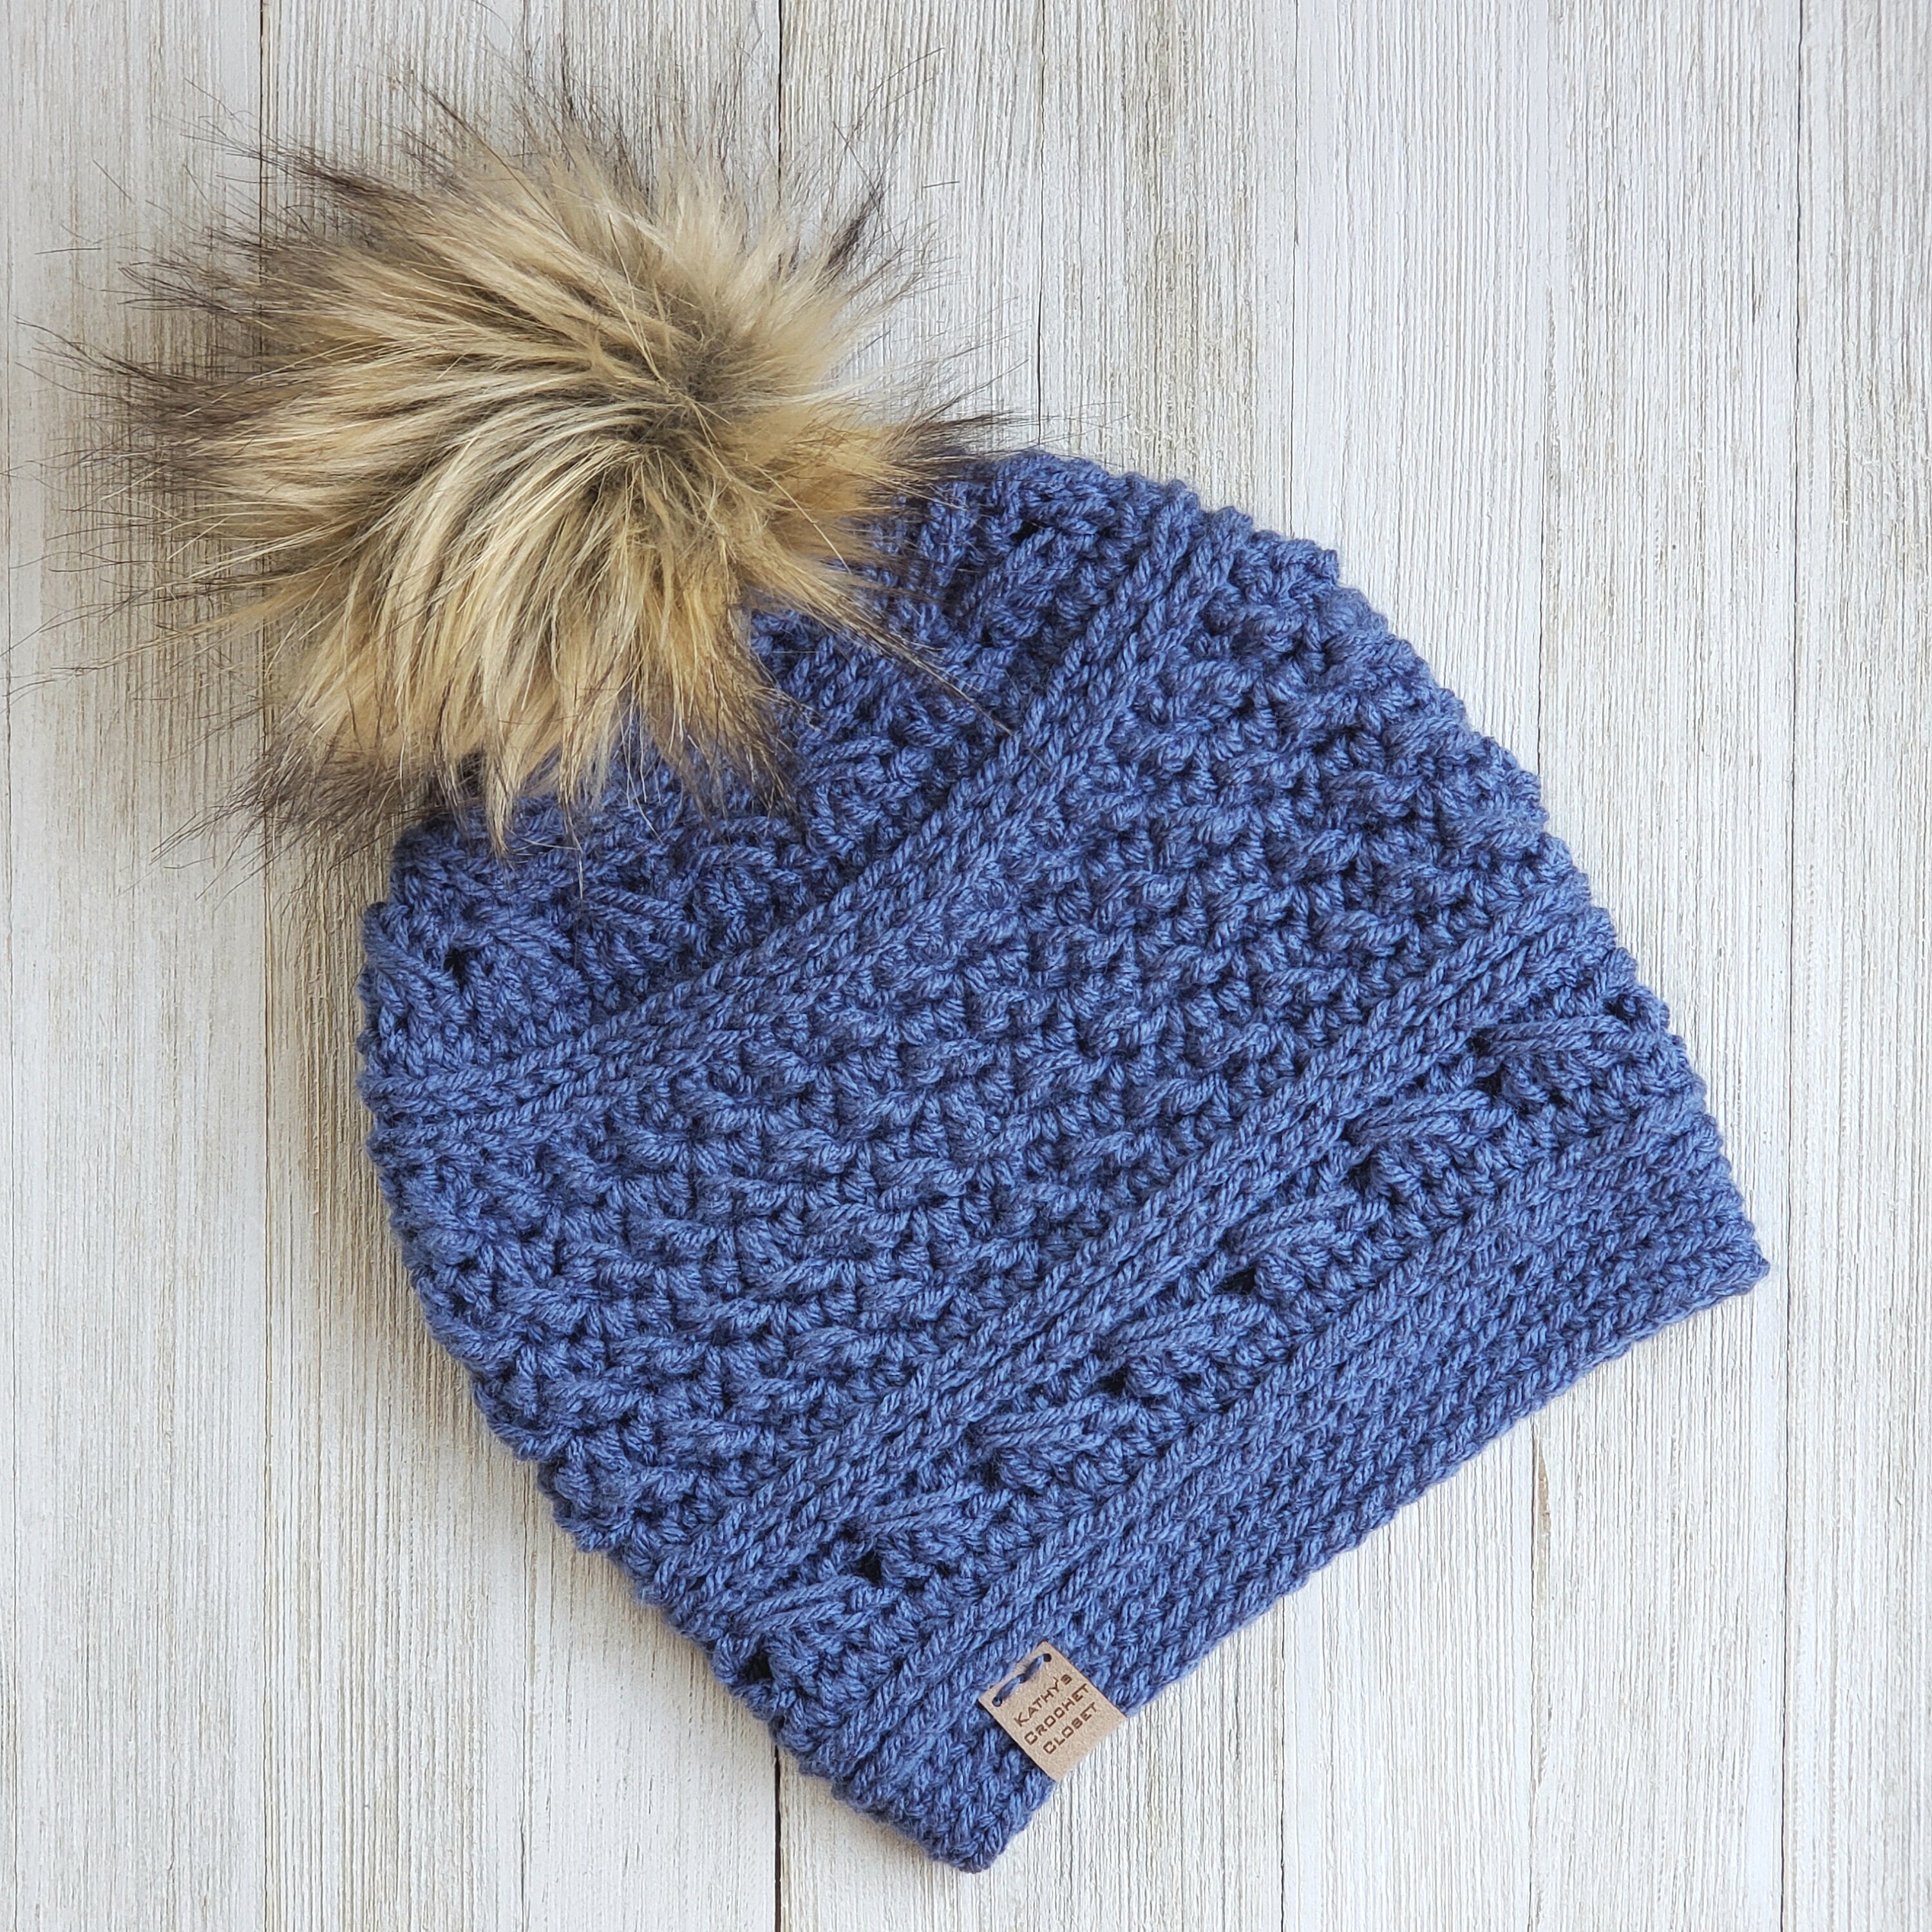 ski-lodge-beanie-crochet-hat-pattern-lookbook 3-1 - Expression Fiber Arts